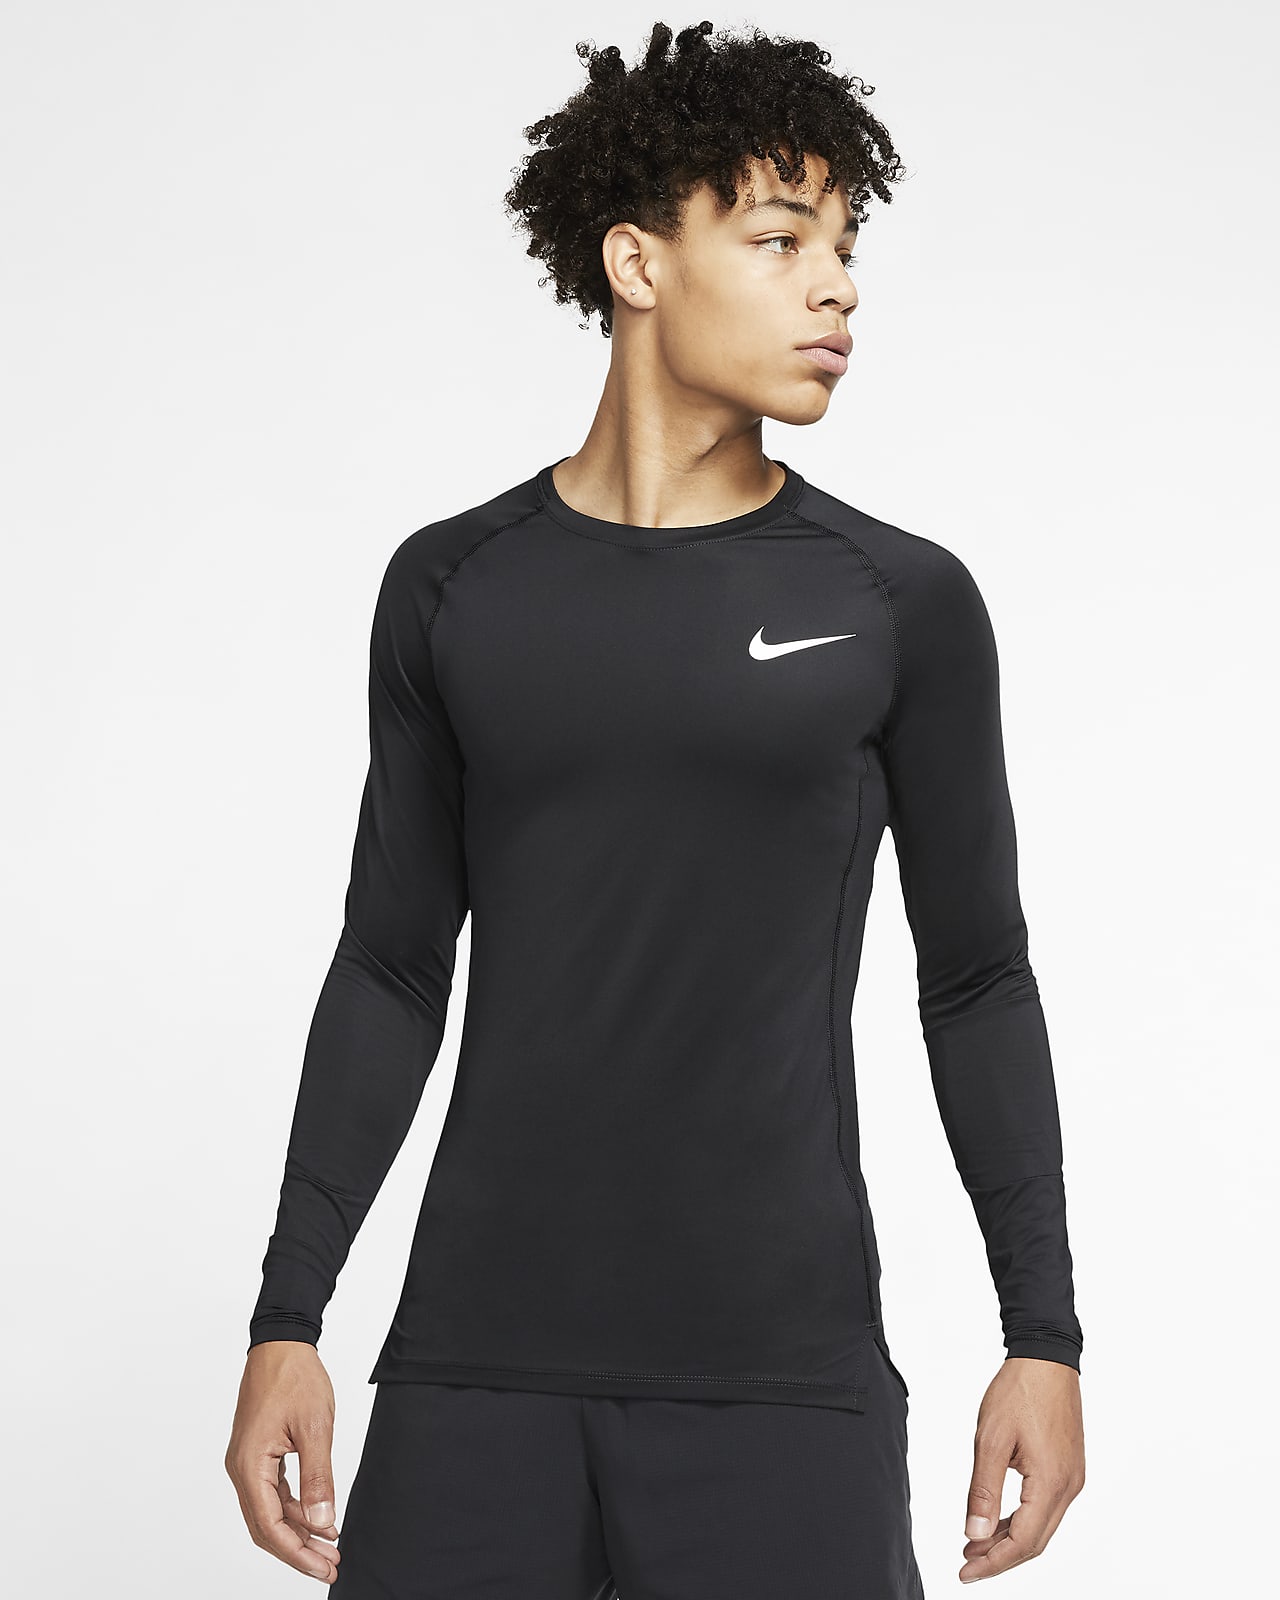 Nike Pro Men's Long-Sleeve Top. Nike IN